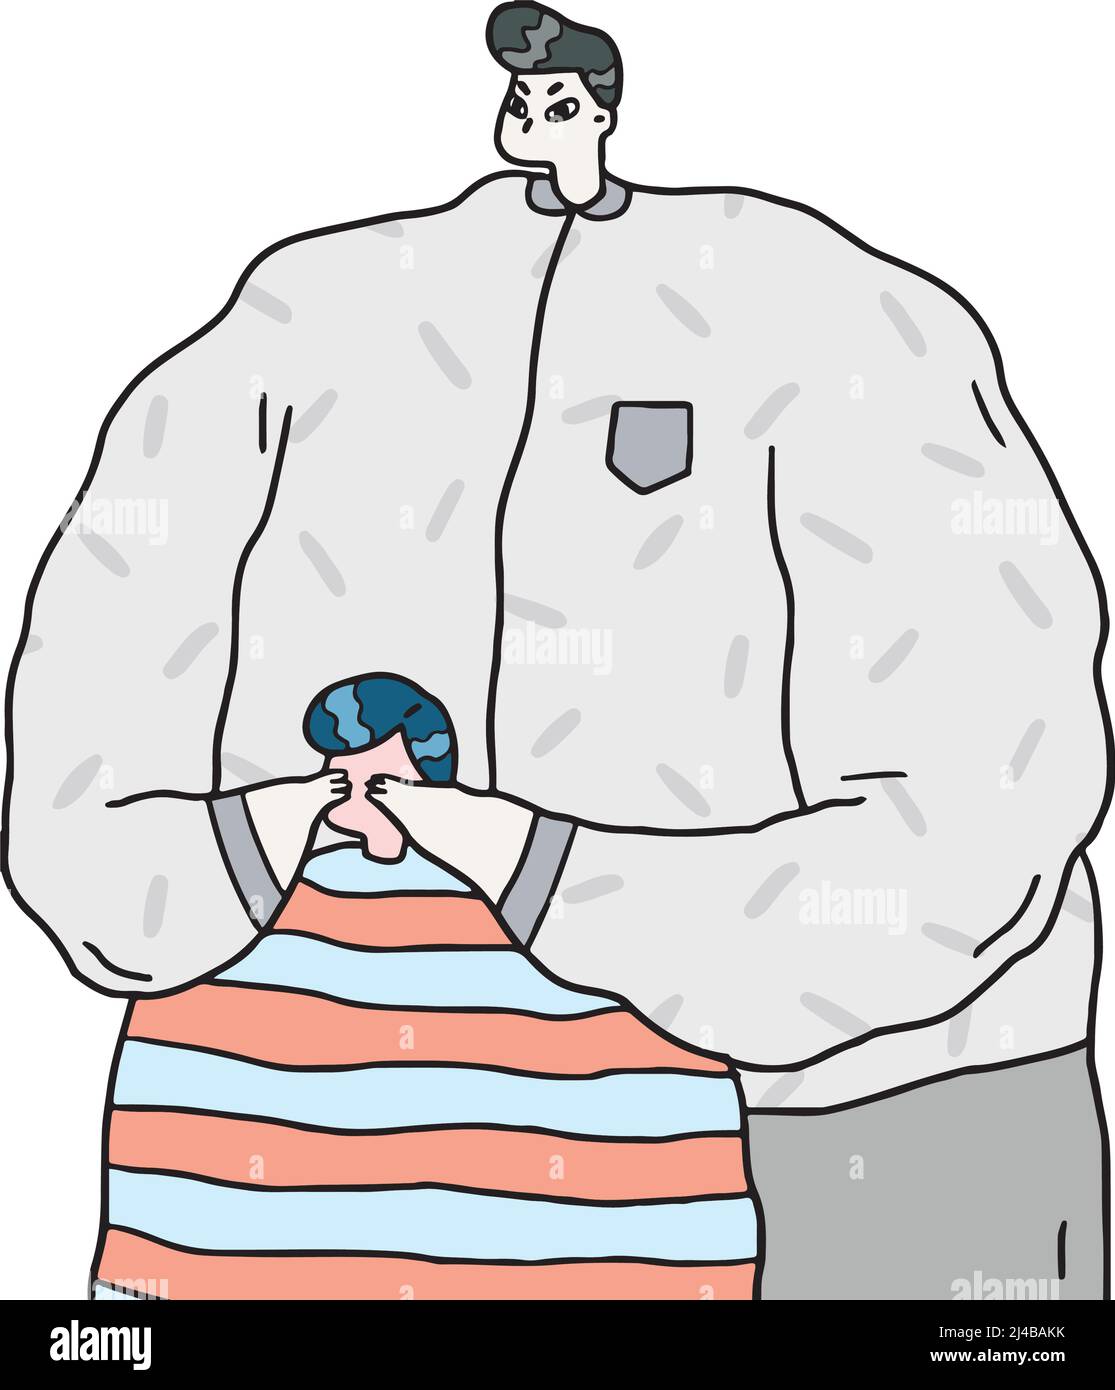 Illustrazione vettoriale disegnata a mano dell'uomo che chiude gli occhi dei bambini con le mani. Illustrazione Vettoriale